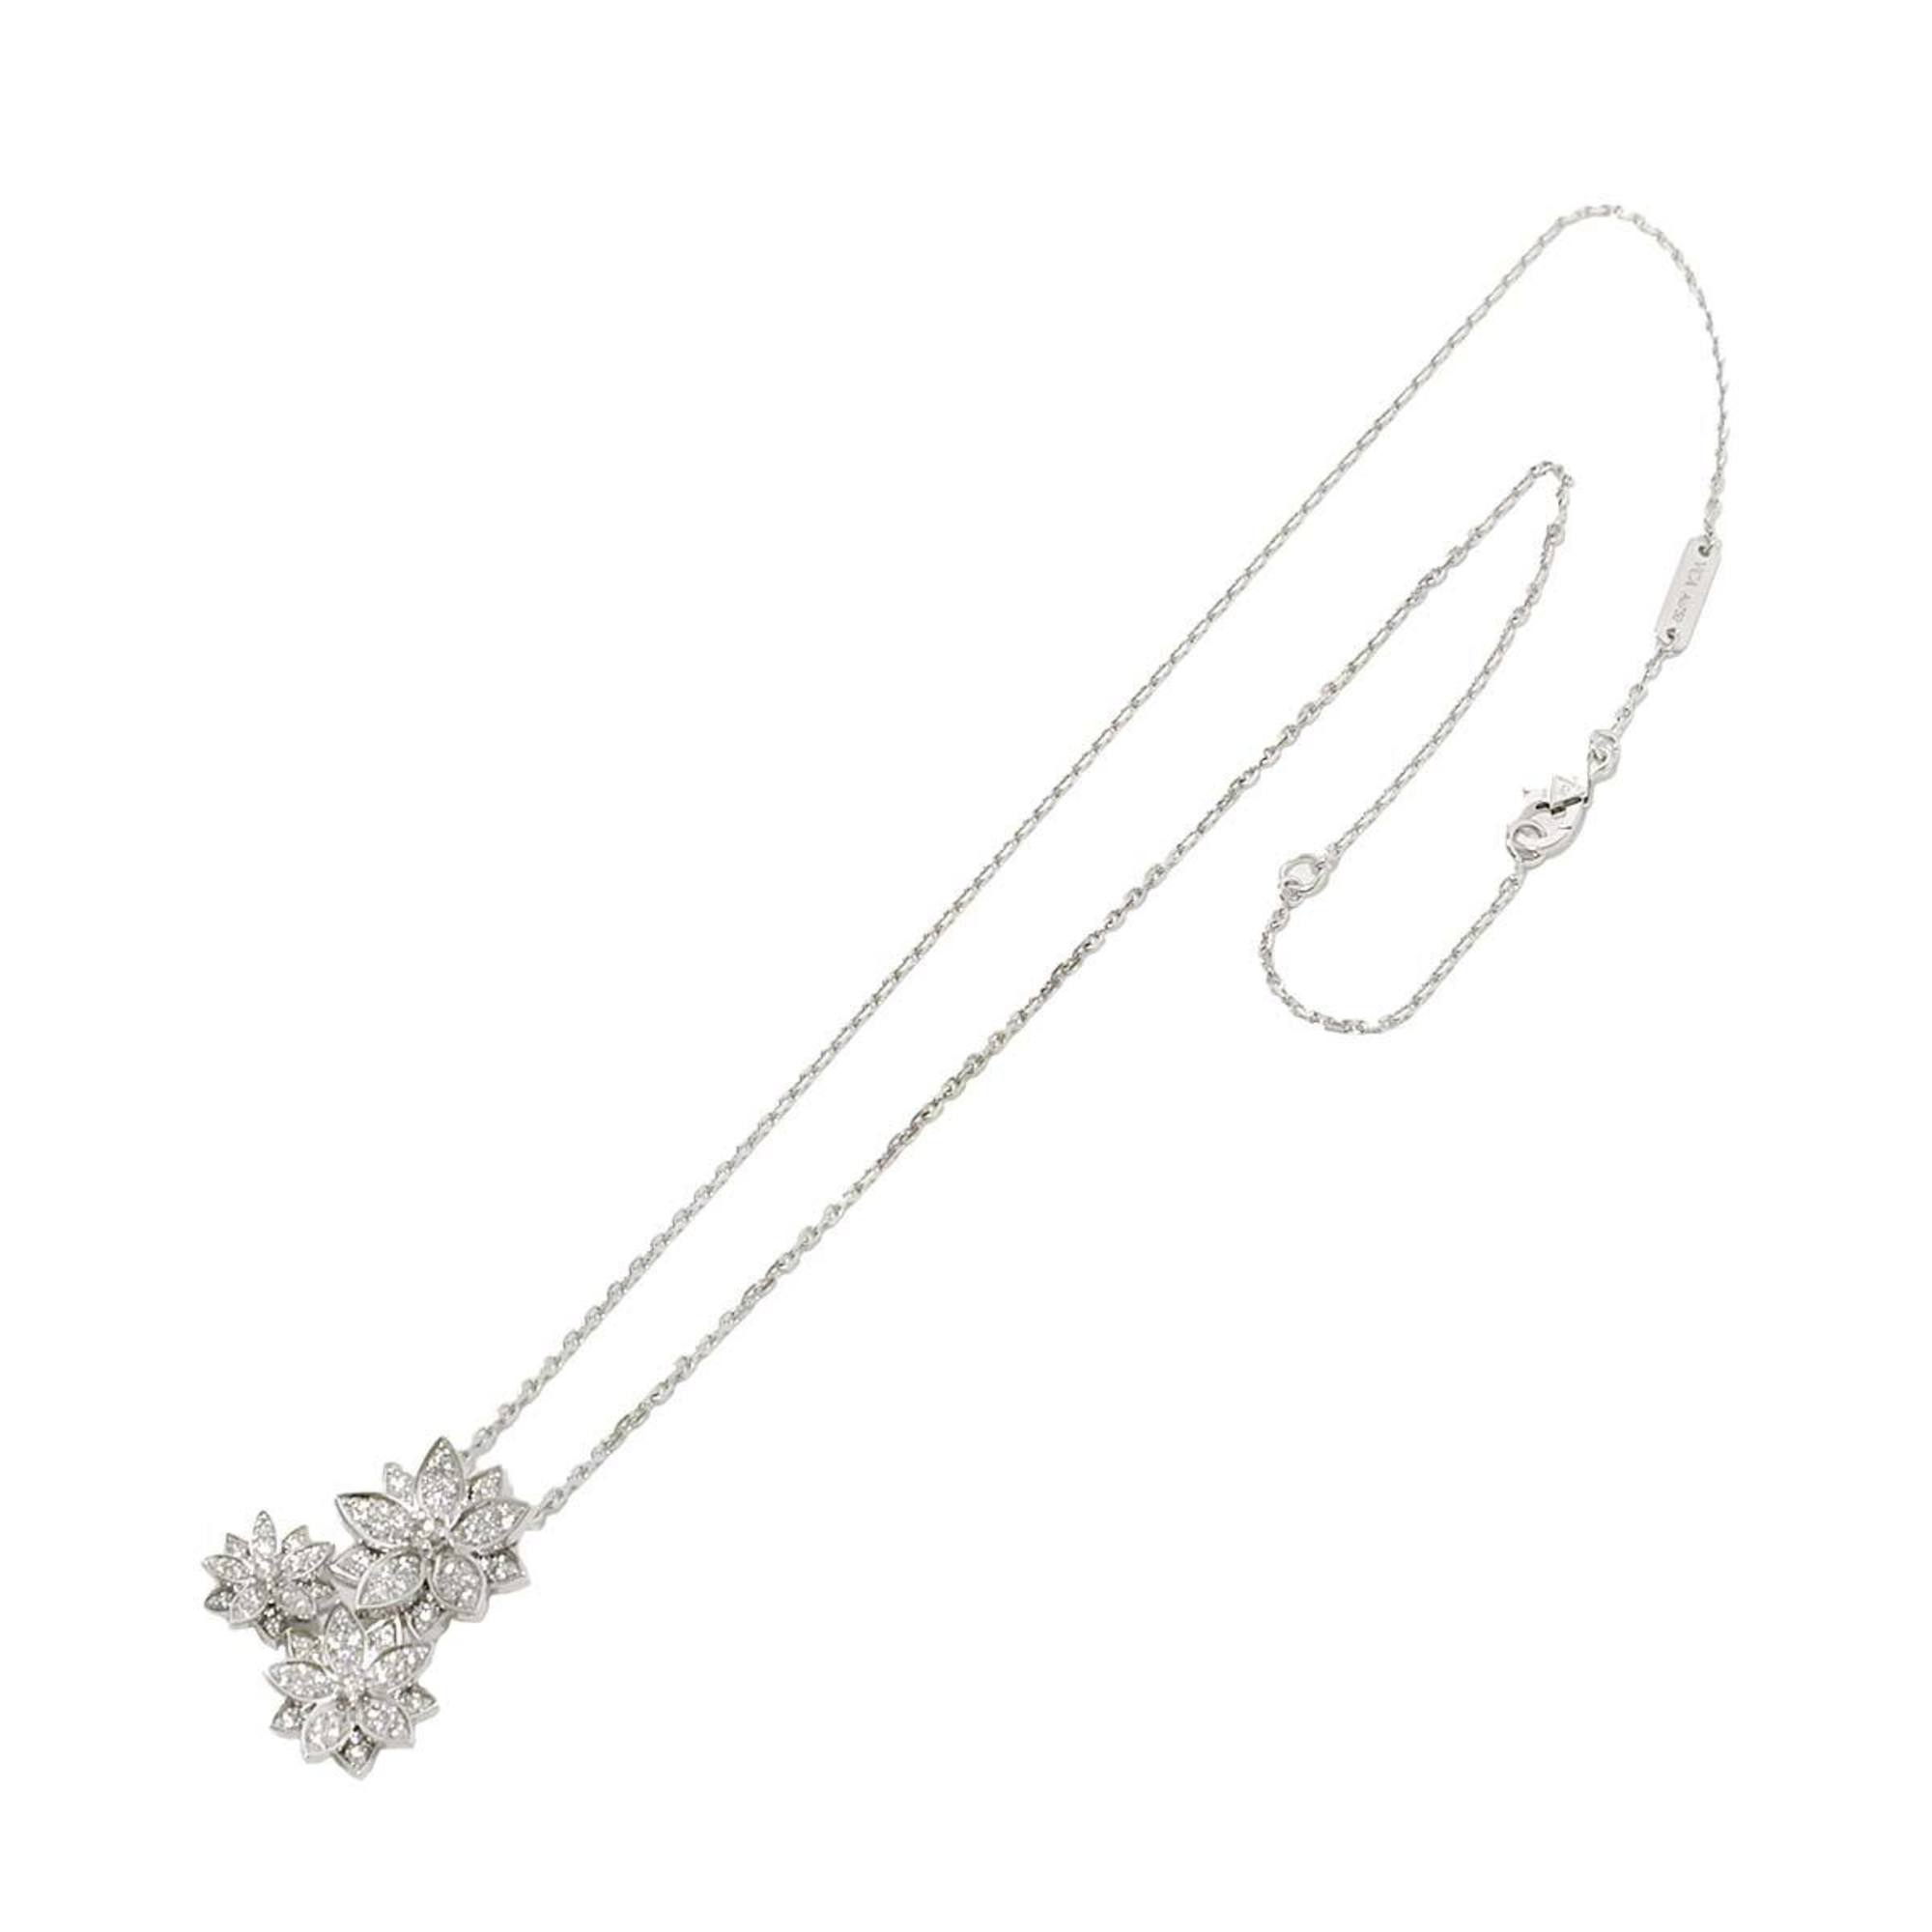 Van Cleef & Arpels Lotus 3 Flower Diamond Necklace 42cm K18 WG 750